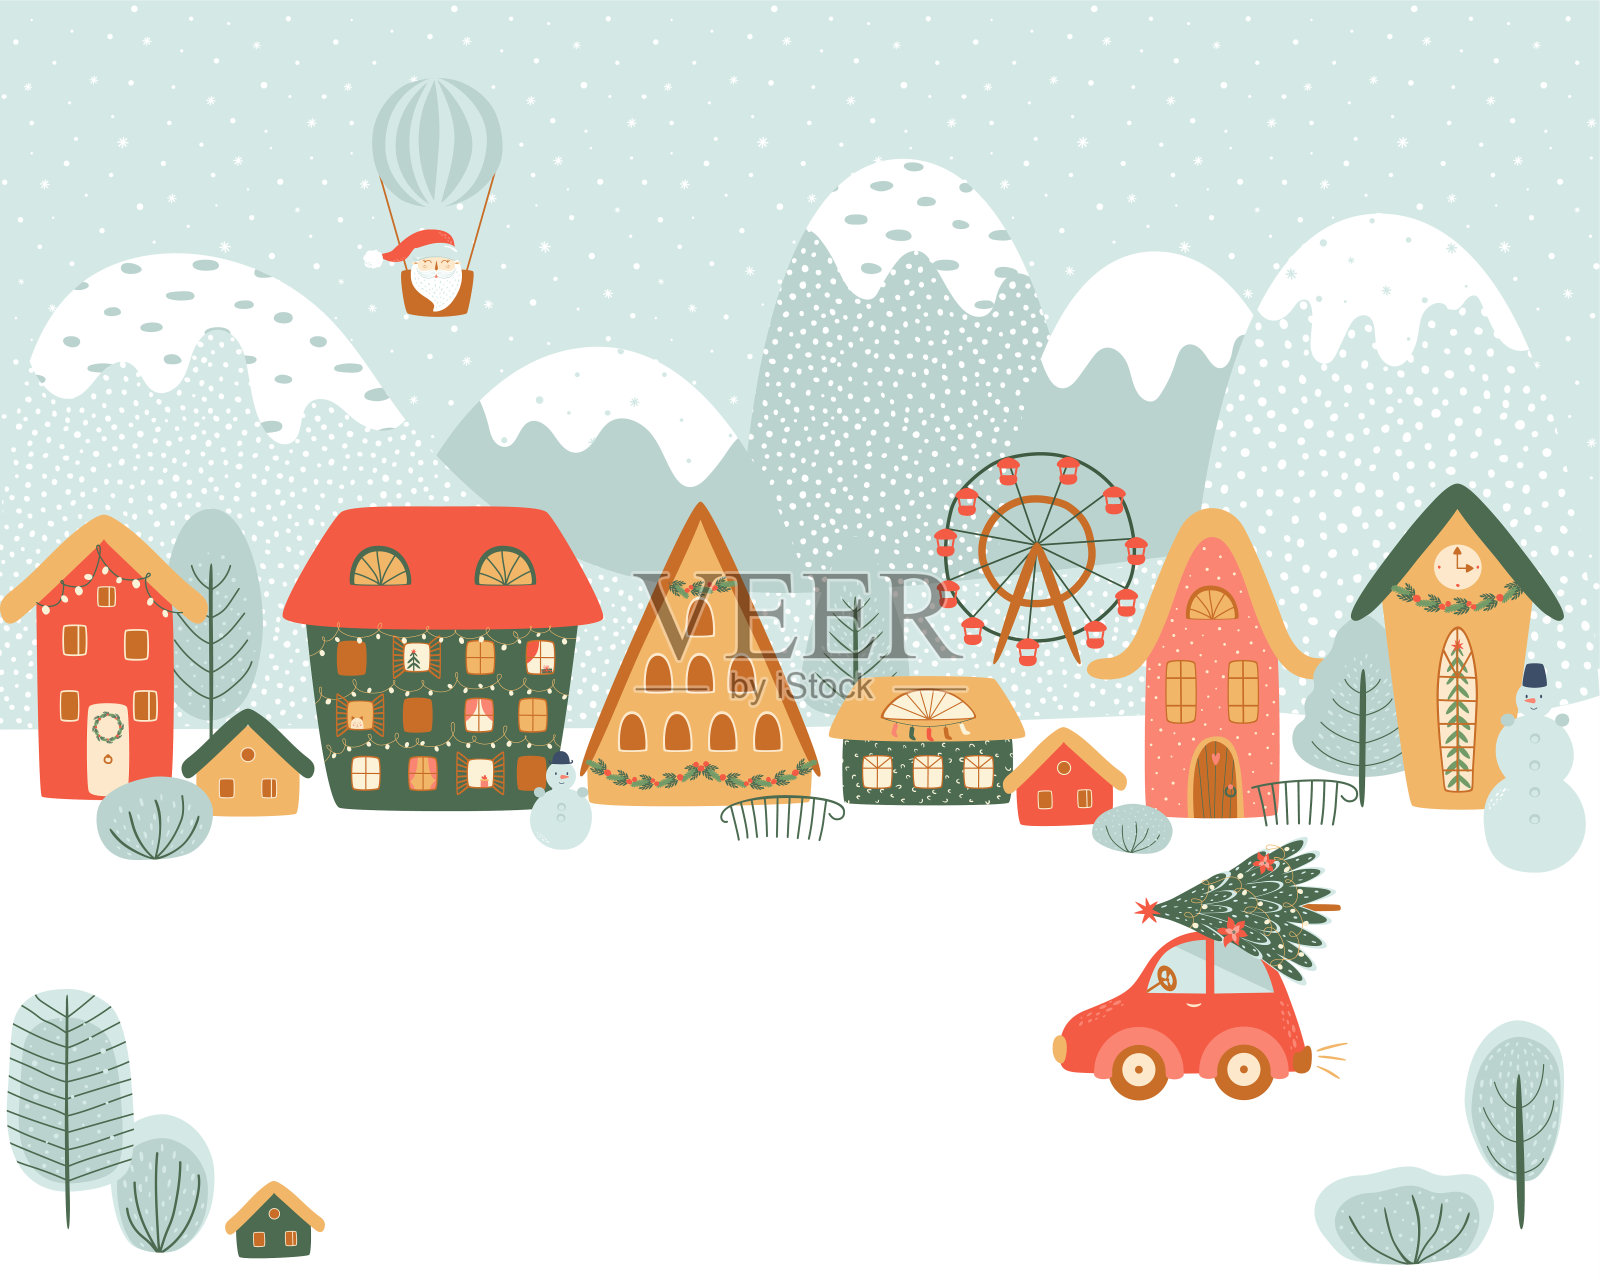 山上的神奇圣诞村。冬村、乡村、圣诞景观、汽车。可爱的卡通背景插画图片素材